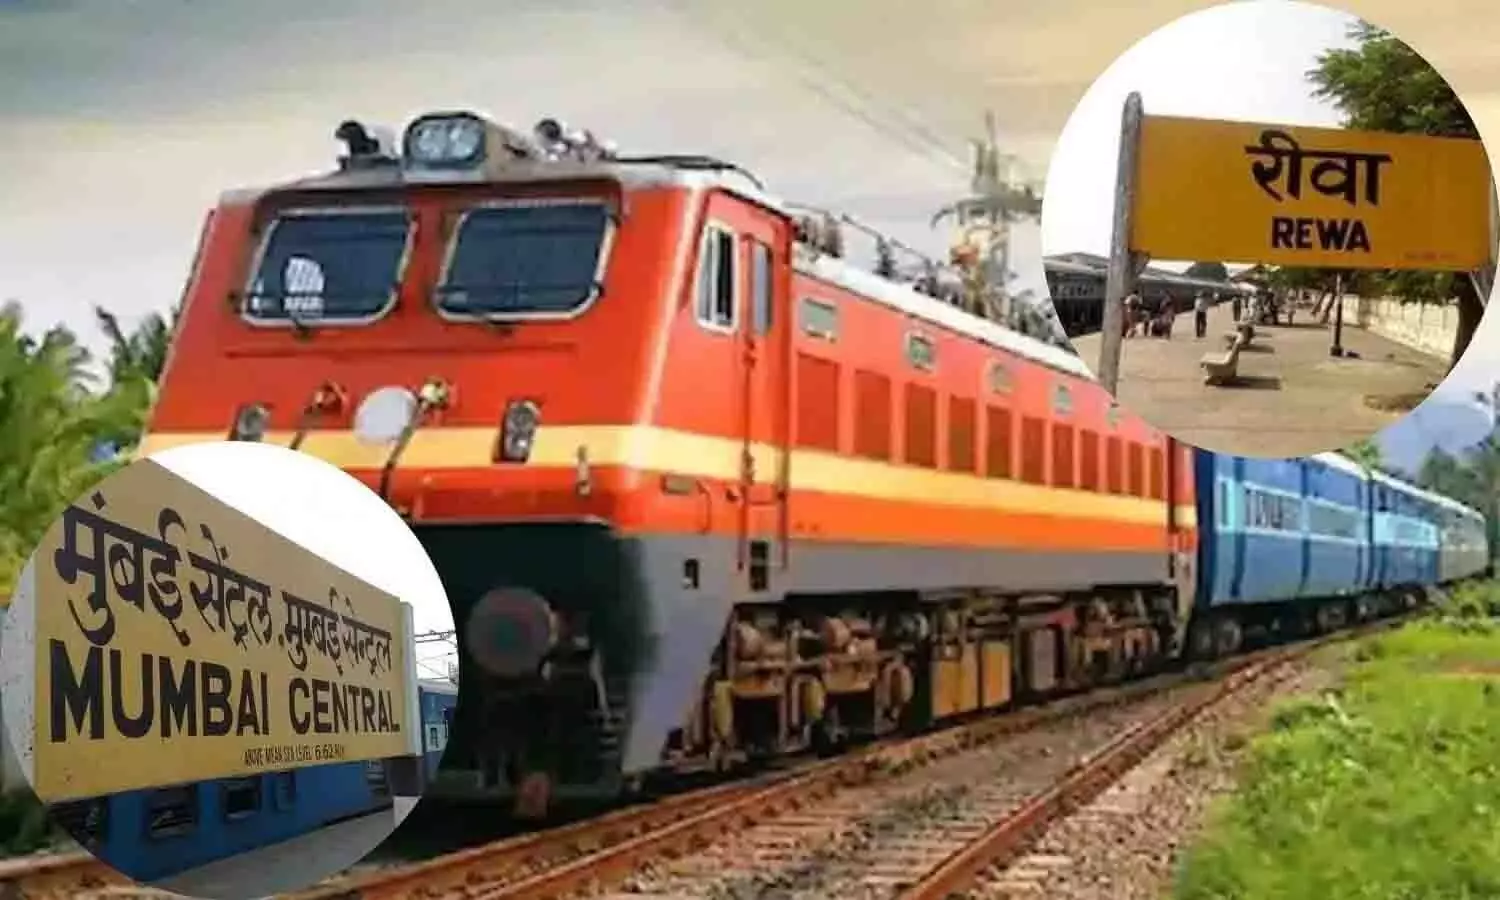 मुंबई से रीवा के लिए 2 मई से चलेगी स्पेशल ट्रेन, जारी हुआ आदेश